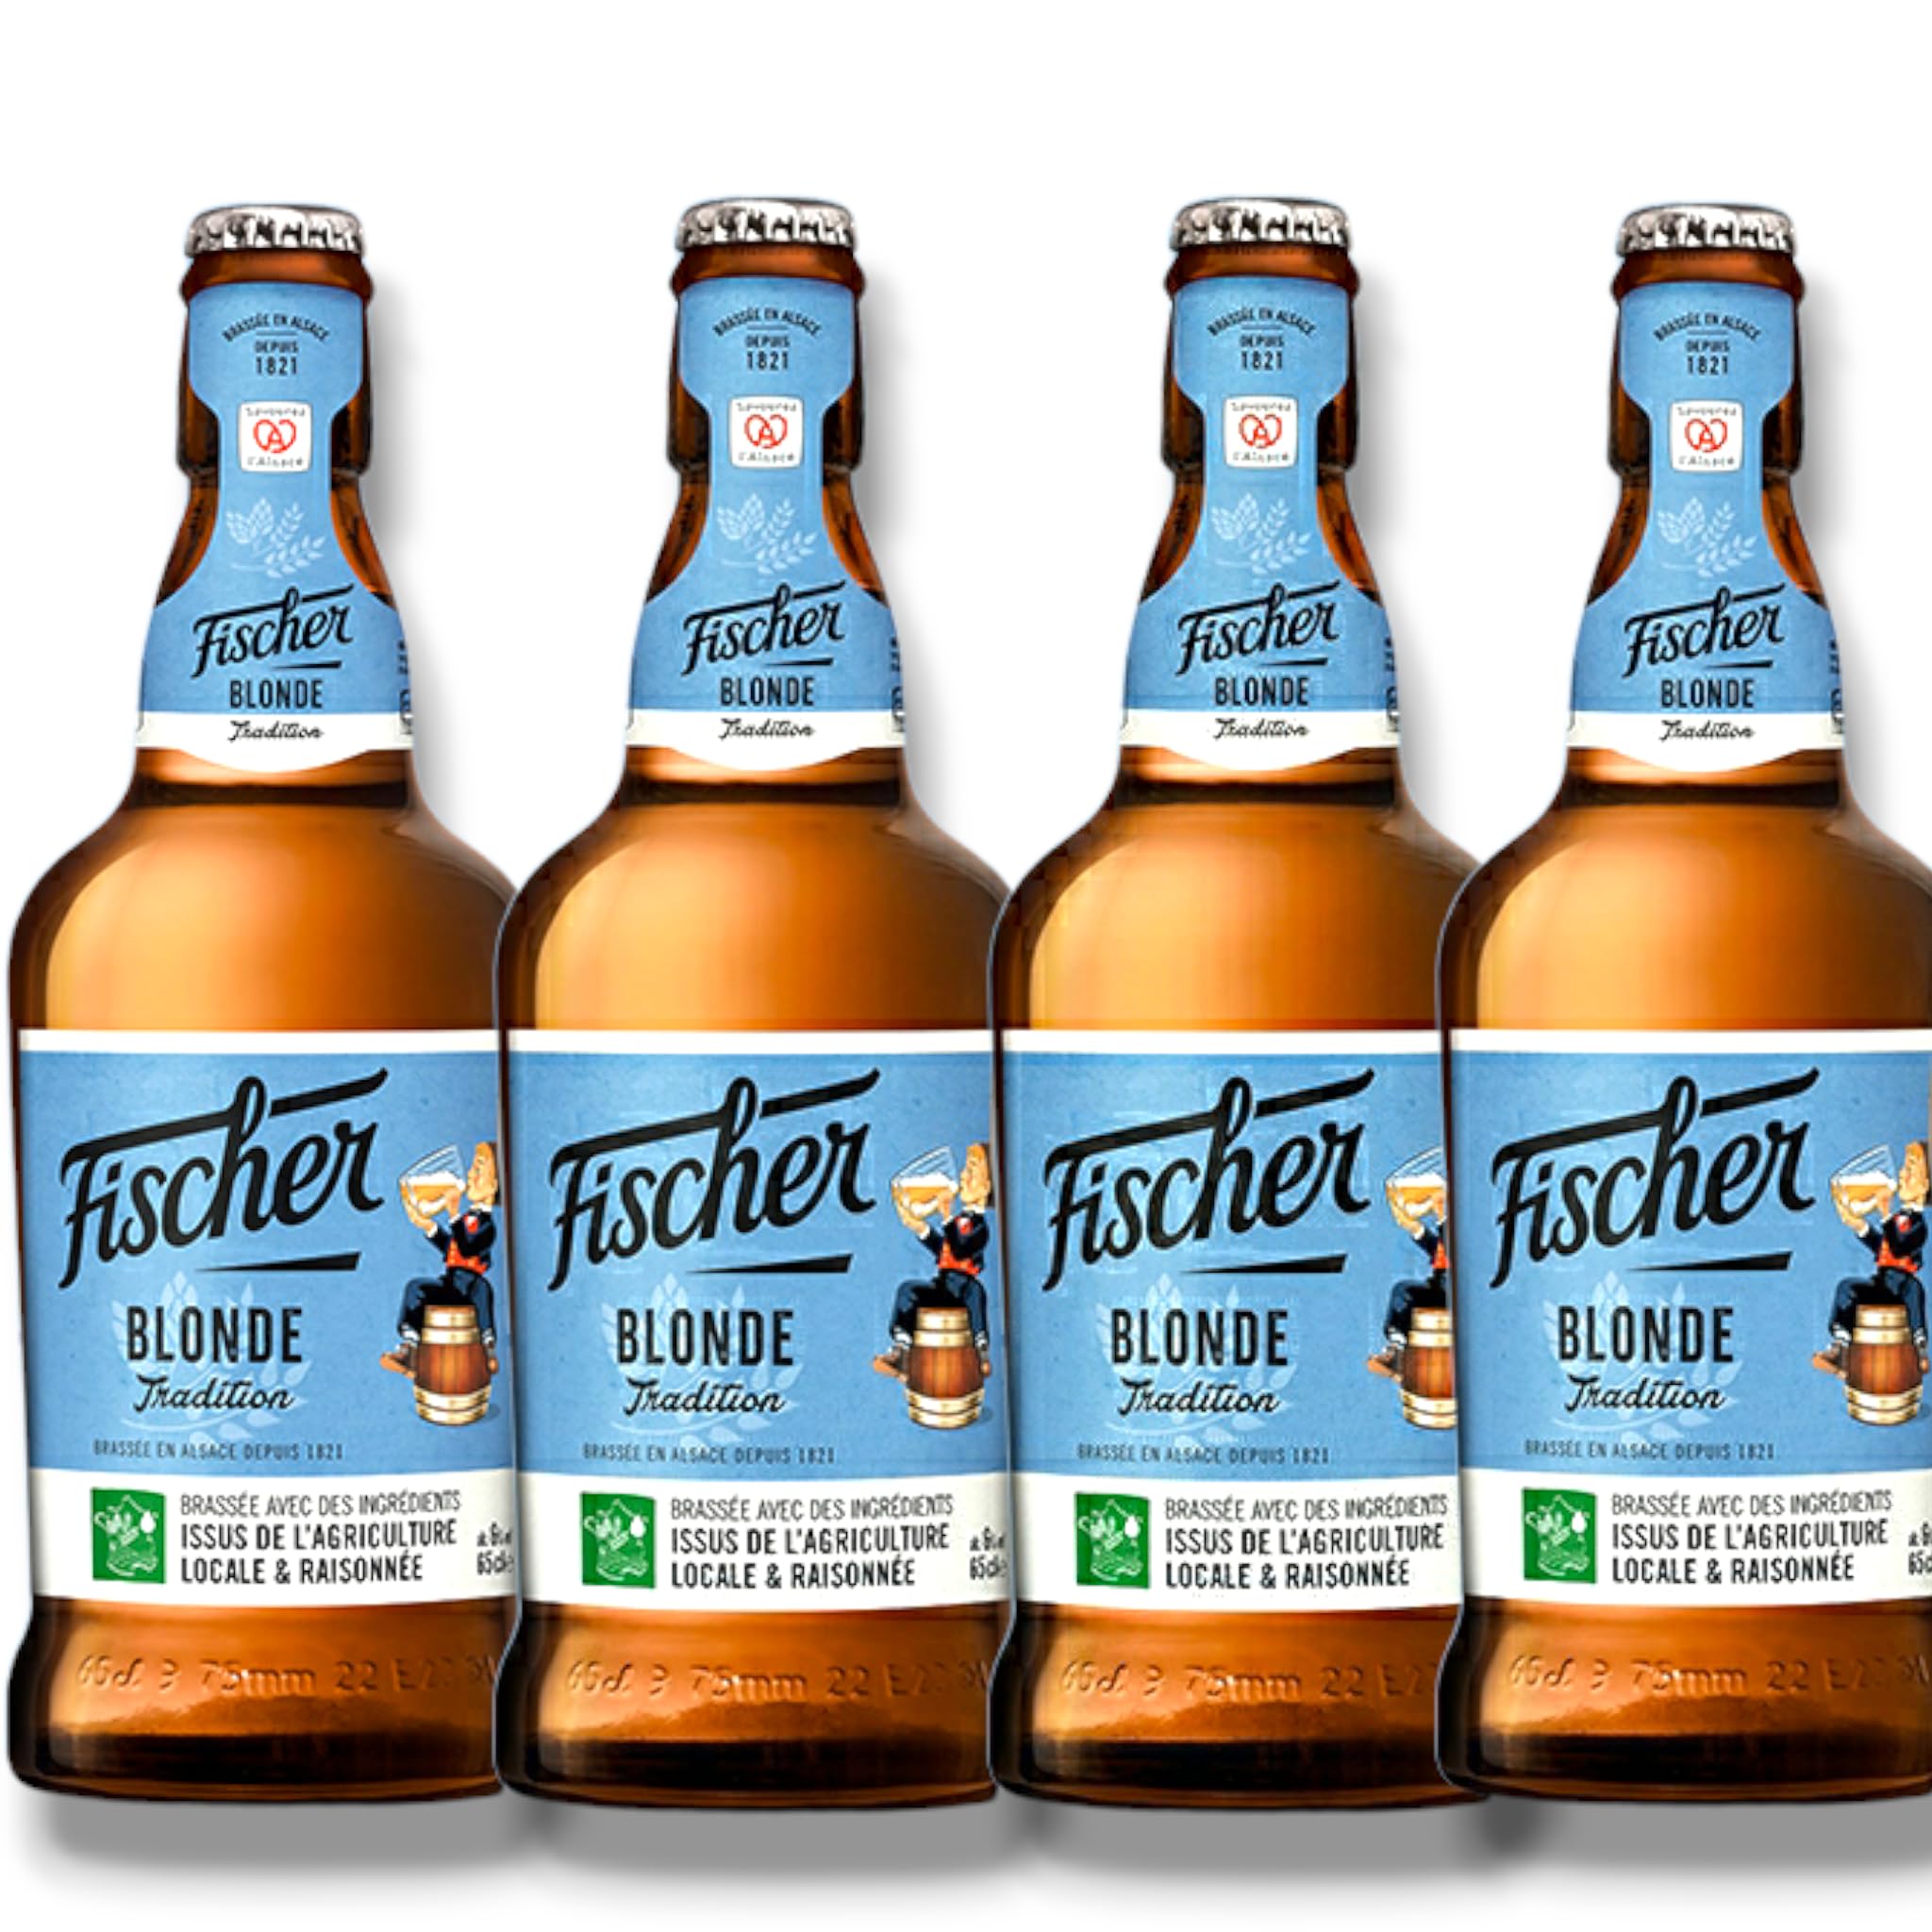 Fischer Blonde Tradition 0,65l- Bier aus der Brasserie Fischer im Elsass mit 6% Vol.